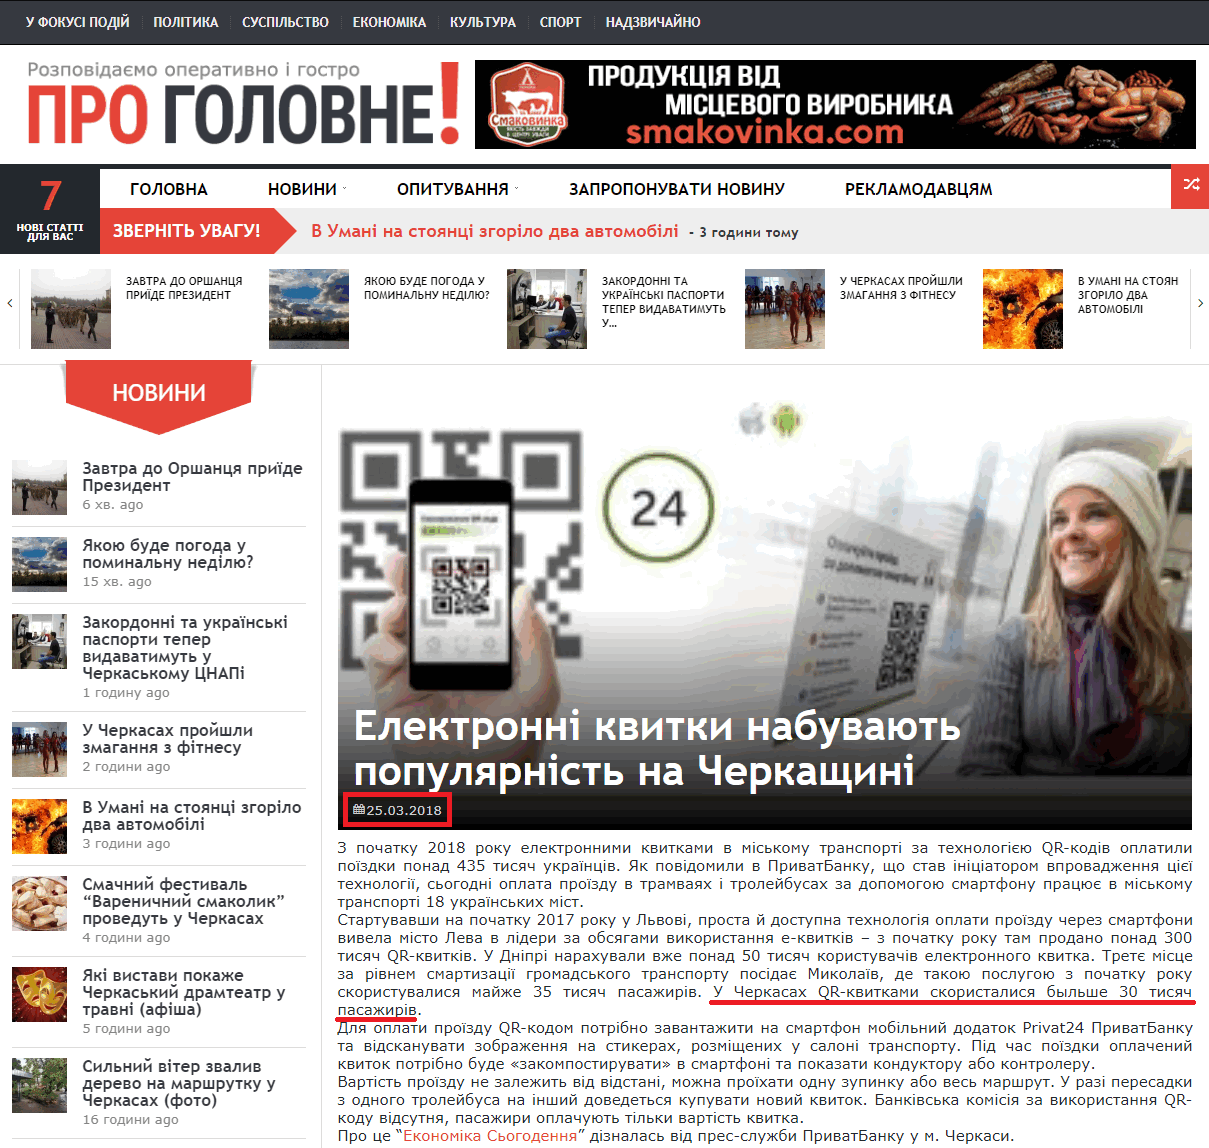 http://progolovne.ck.ua/elektronni-kvytky-nabuvayut-populyarnist-na-cherkaschyni/